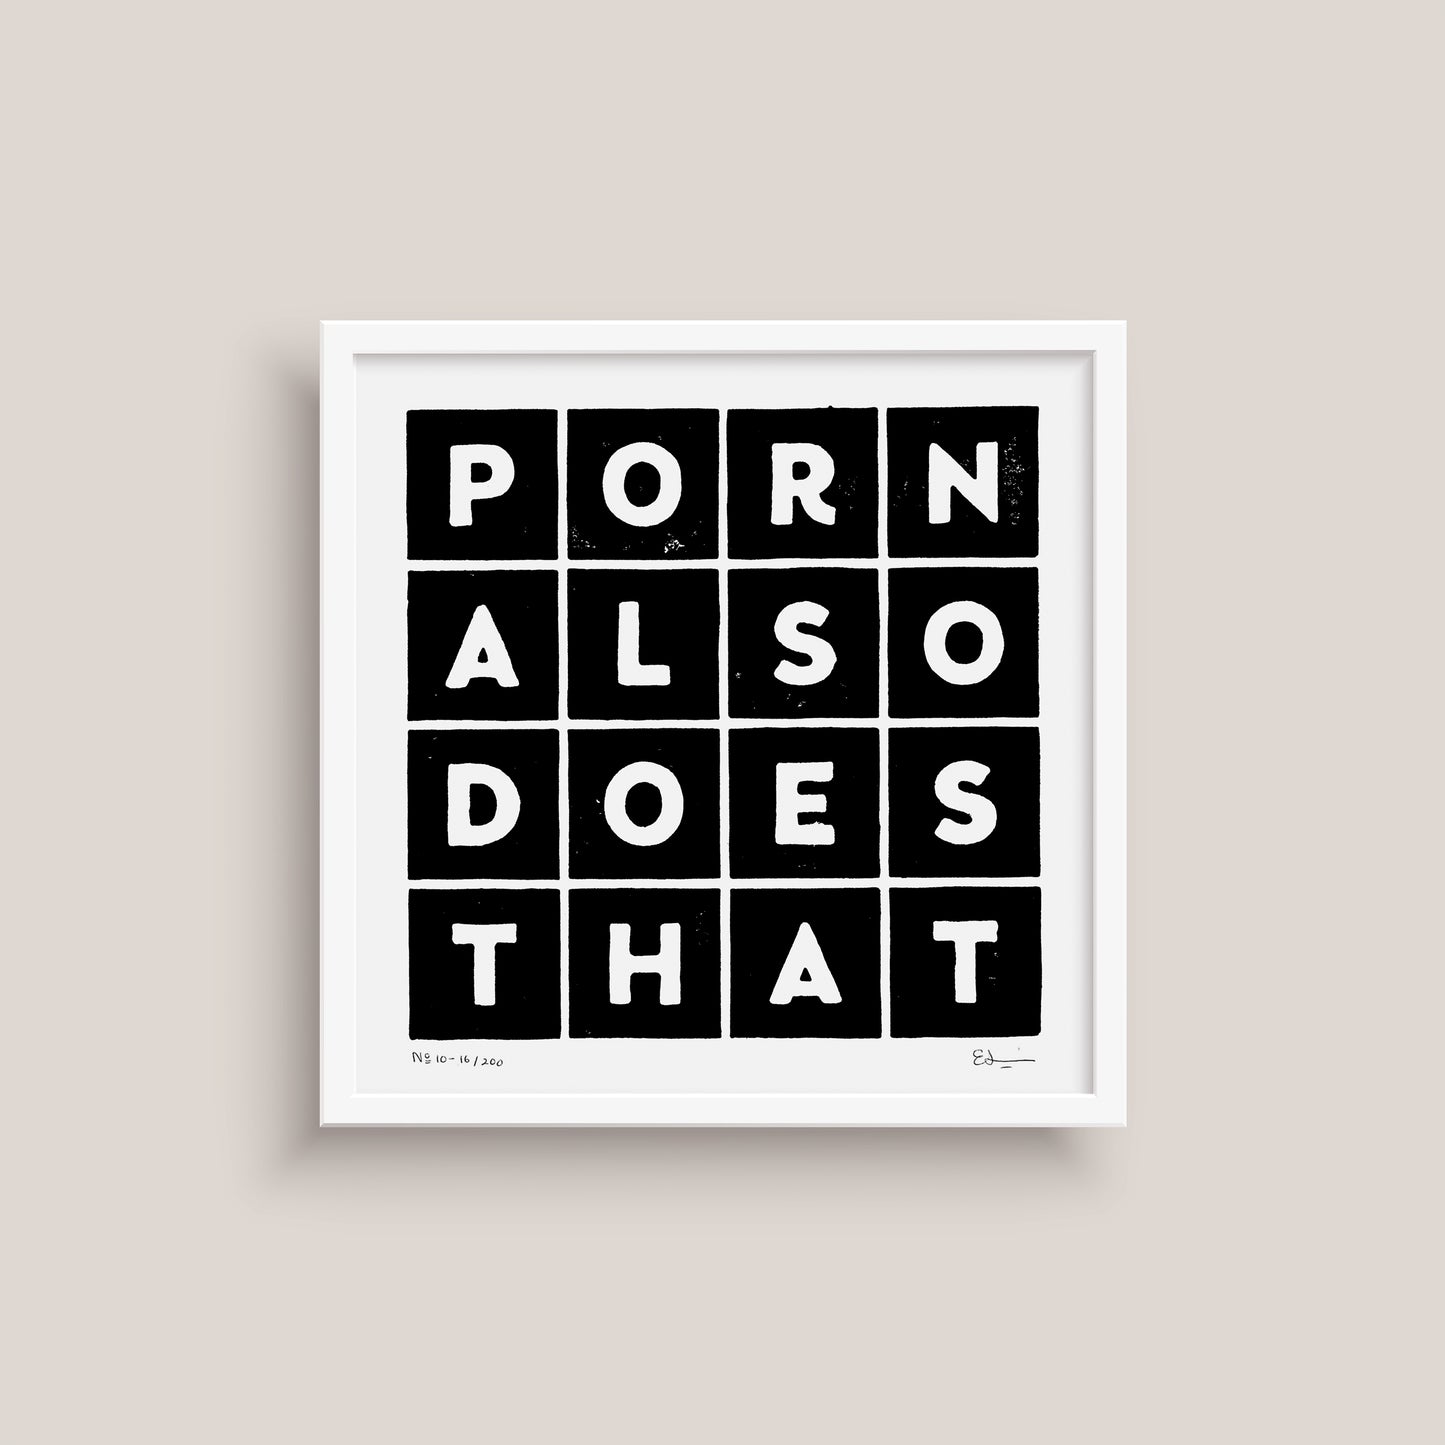 10-porn-also-does-that-printmaking-art-print-eleni-sakelaris